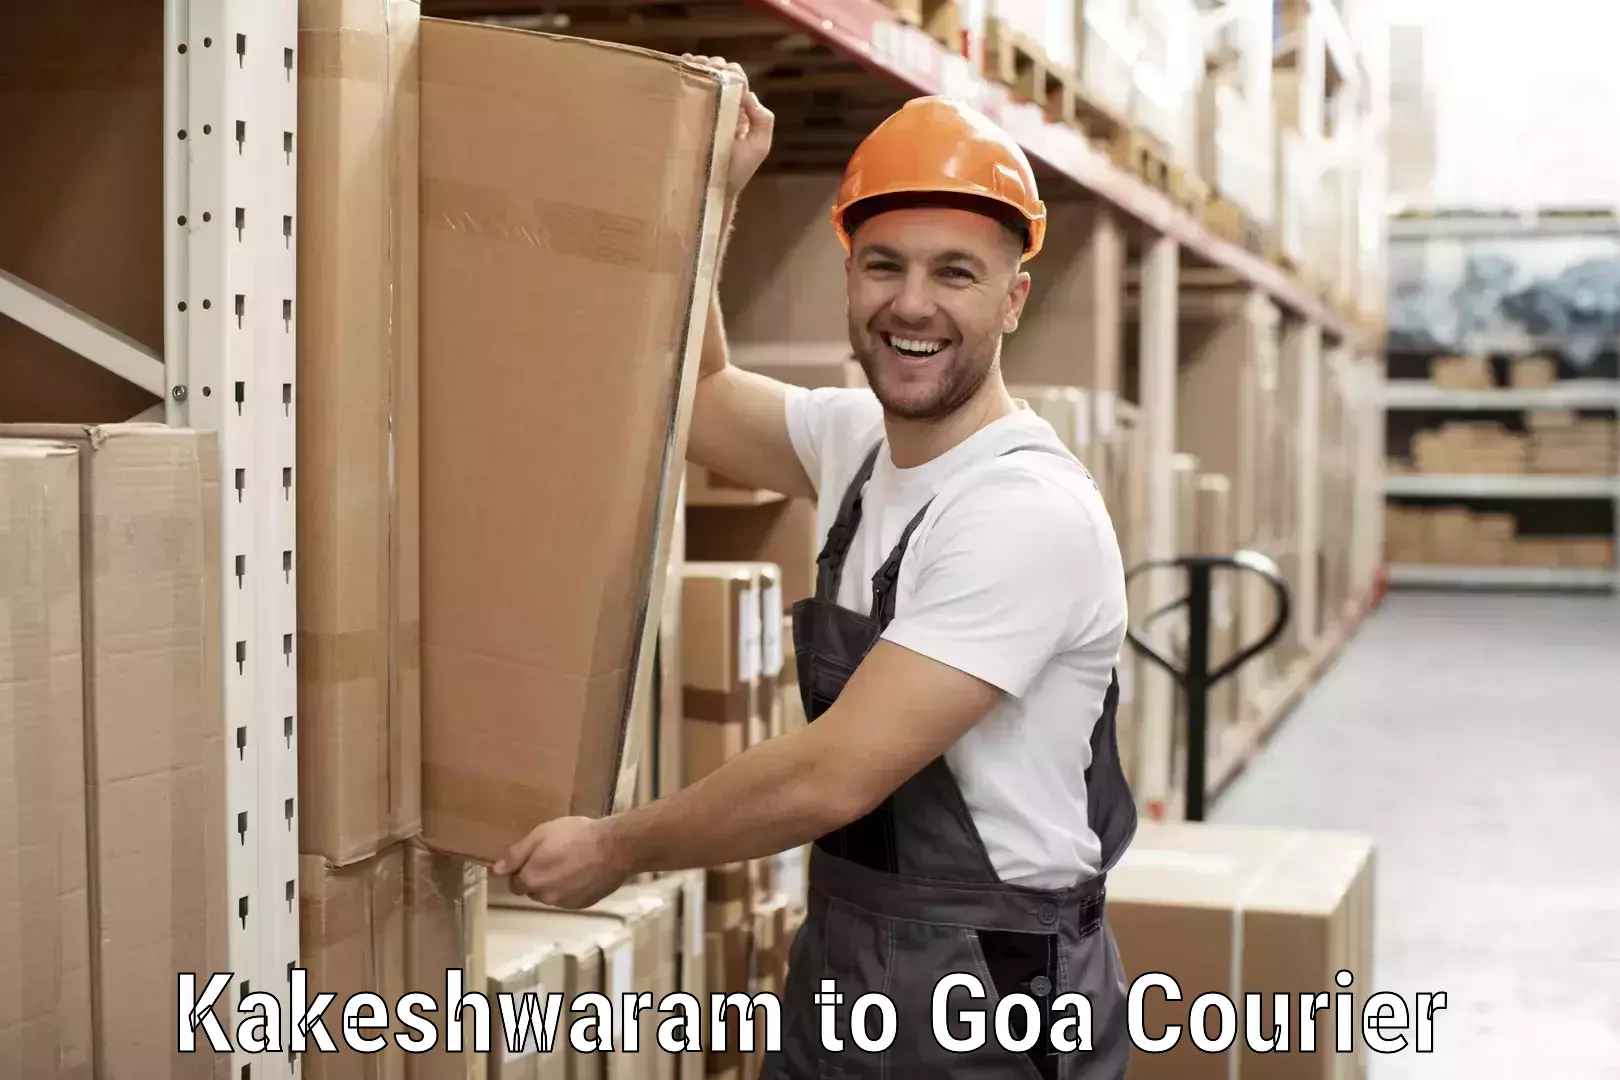 Customizable delivery plans Kakeshwaram to Goa University